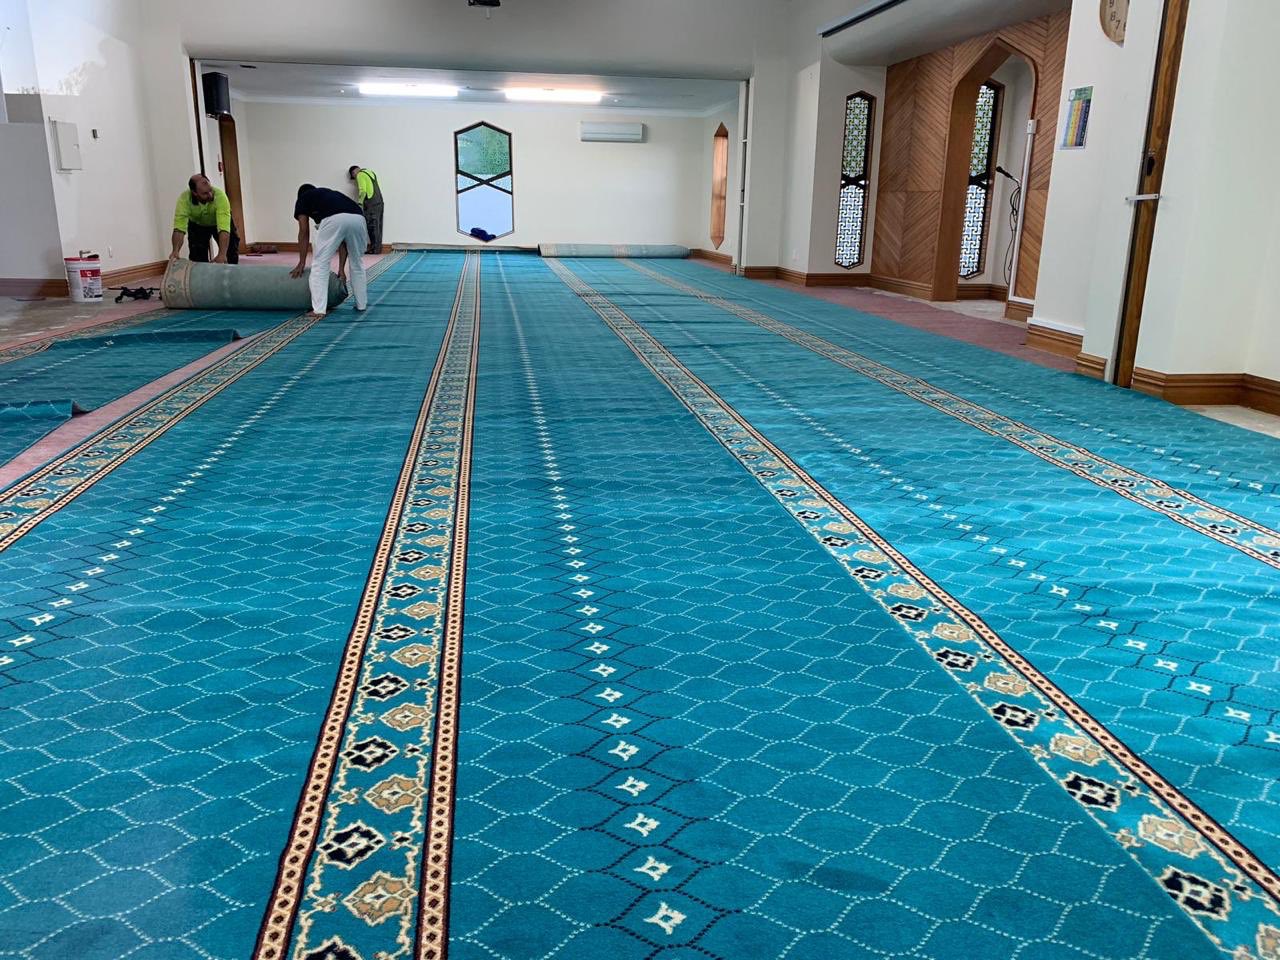 Par la grâce d’Allah la Ligue Islamique Mondiale a fini de placer une moquette de la plus haute qualité dans la mosquée « Noor » en Nouvelle Zélande